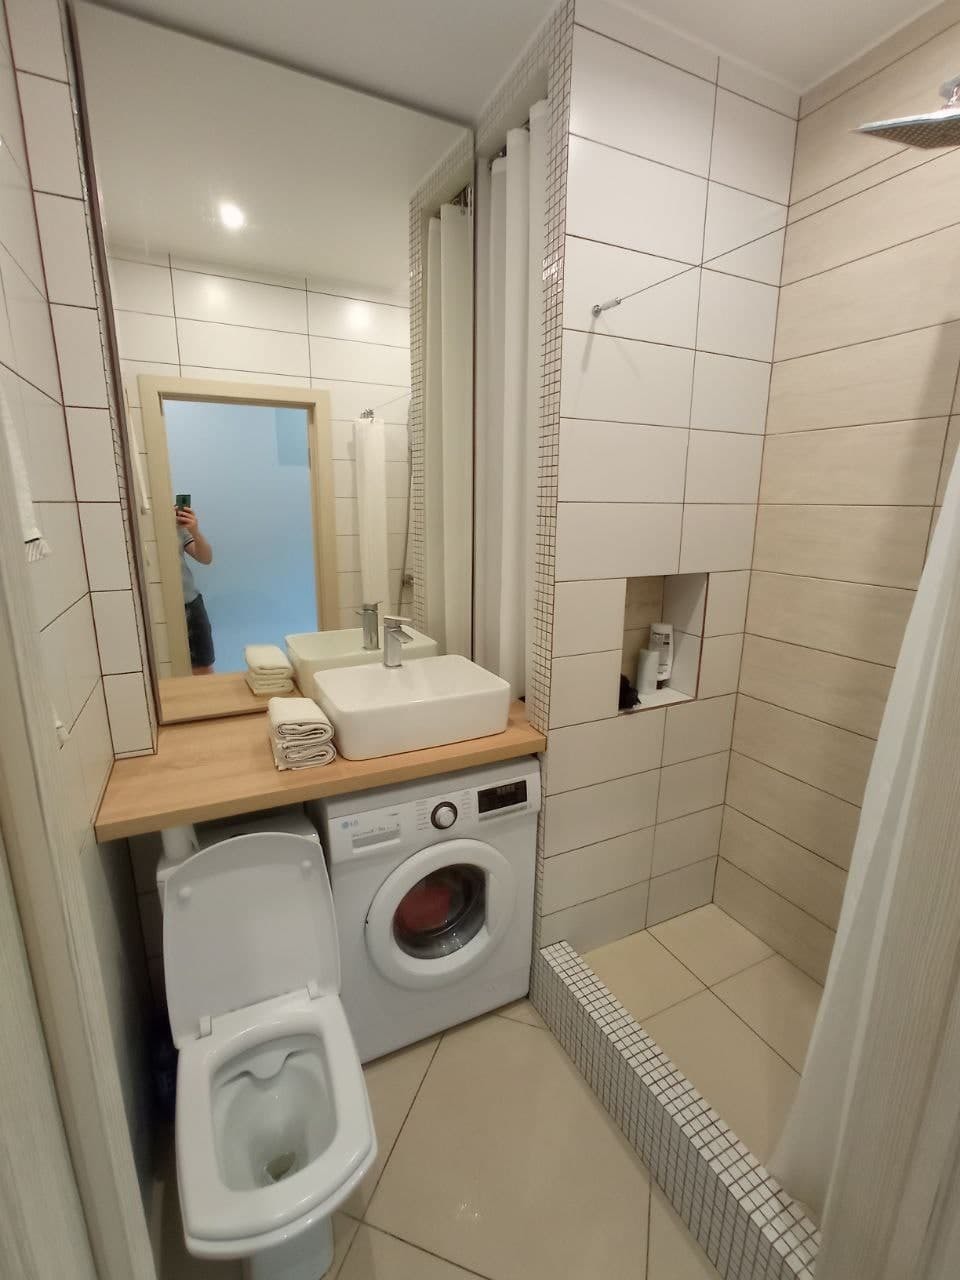 Идеи интерьера ванной комнаты 6 кв м